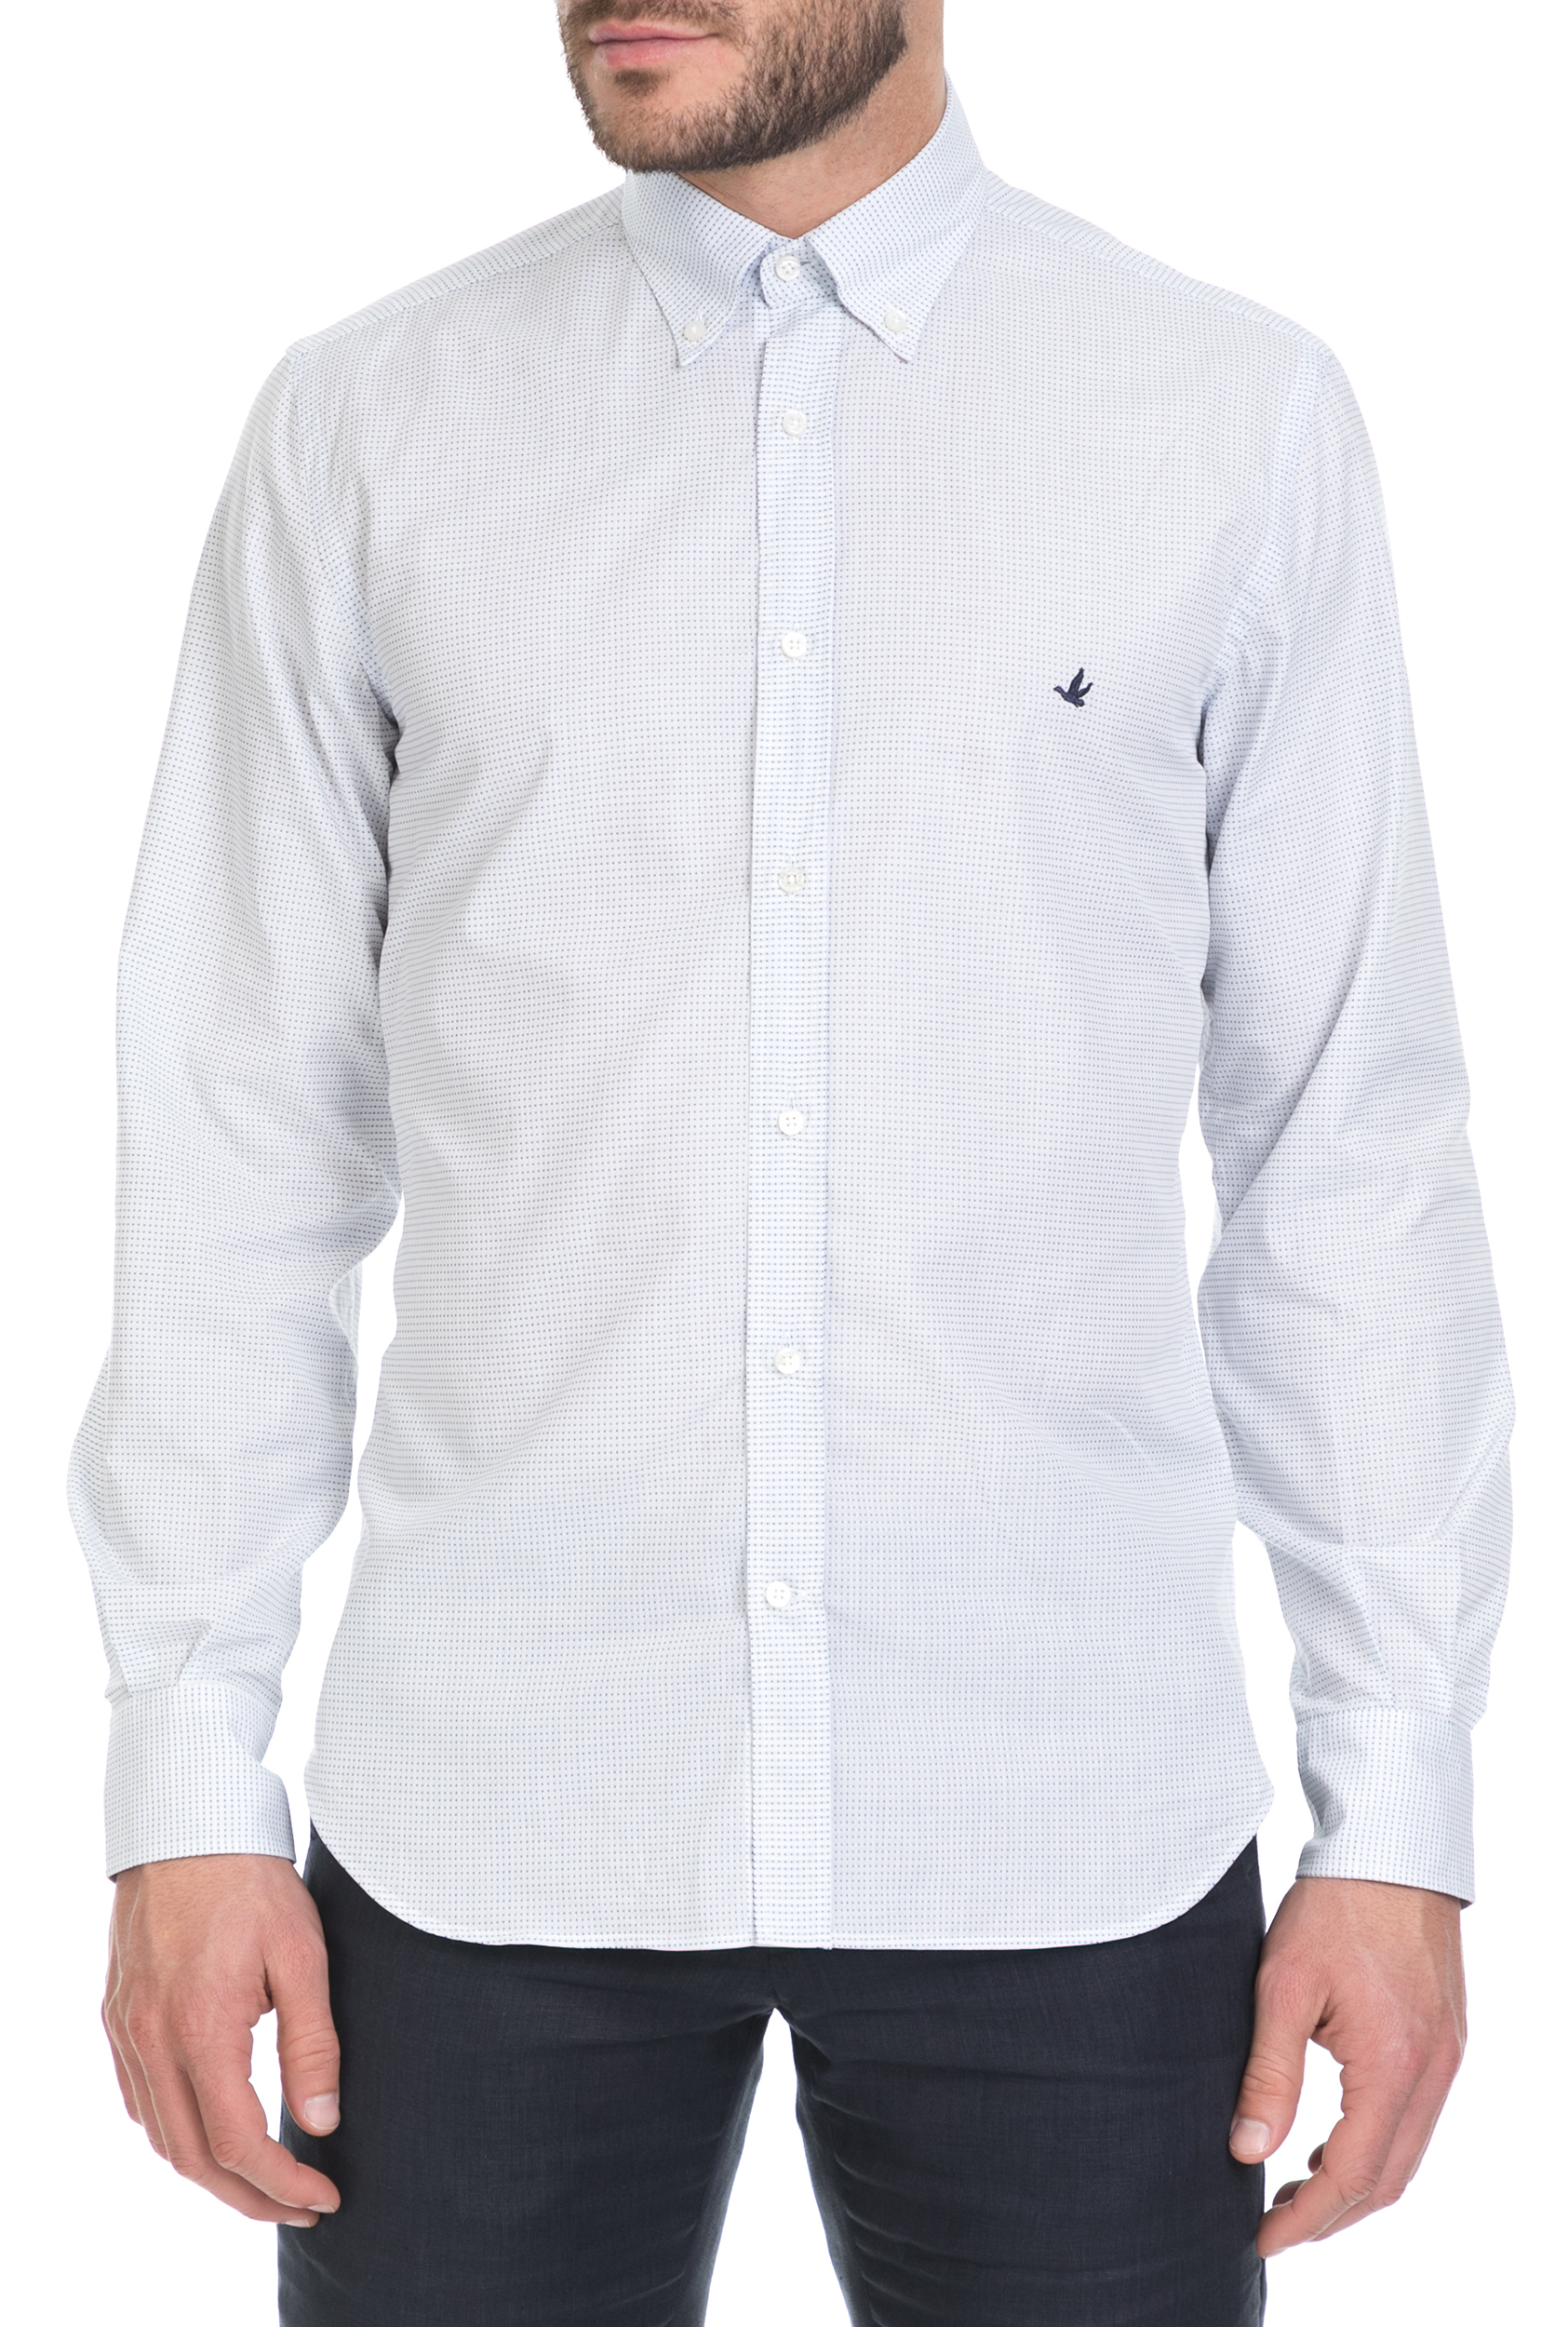 BROOKSFIELD - Ανδρικό μακρυμάνικο πουκάμισο Brooksfield λευκό Ανδρικά/Ρούχα/Πουκάμισα/Μακρυμάνικα